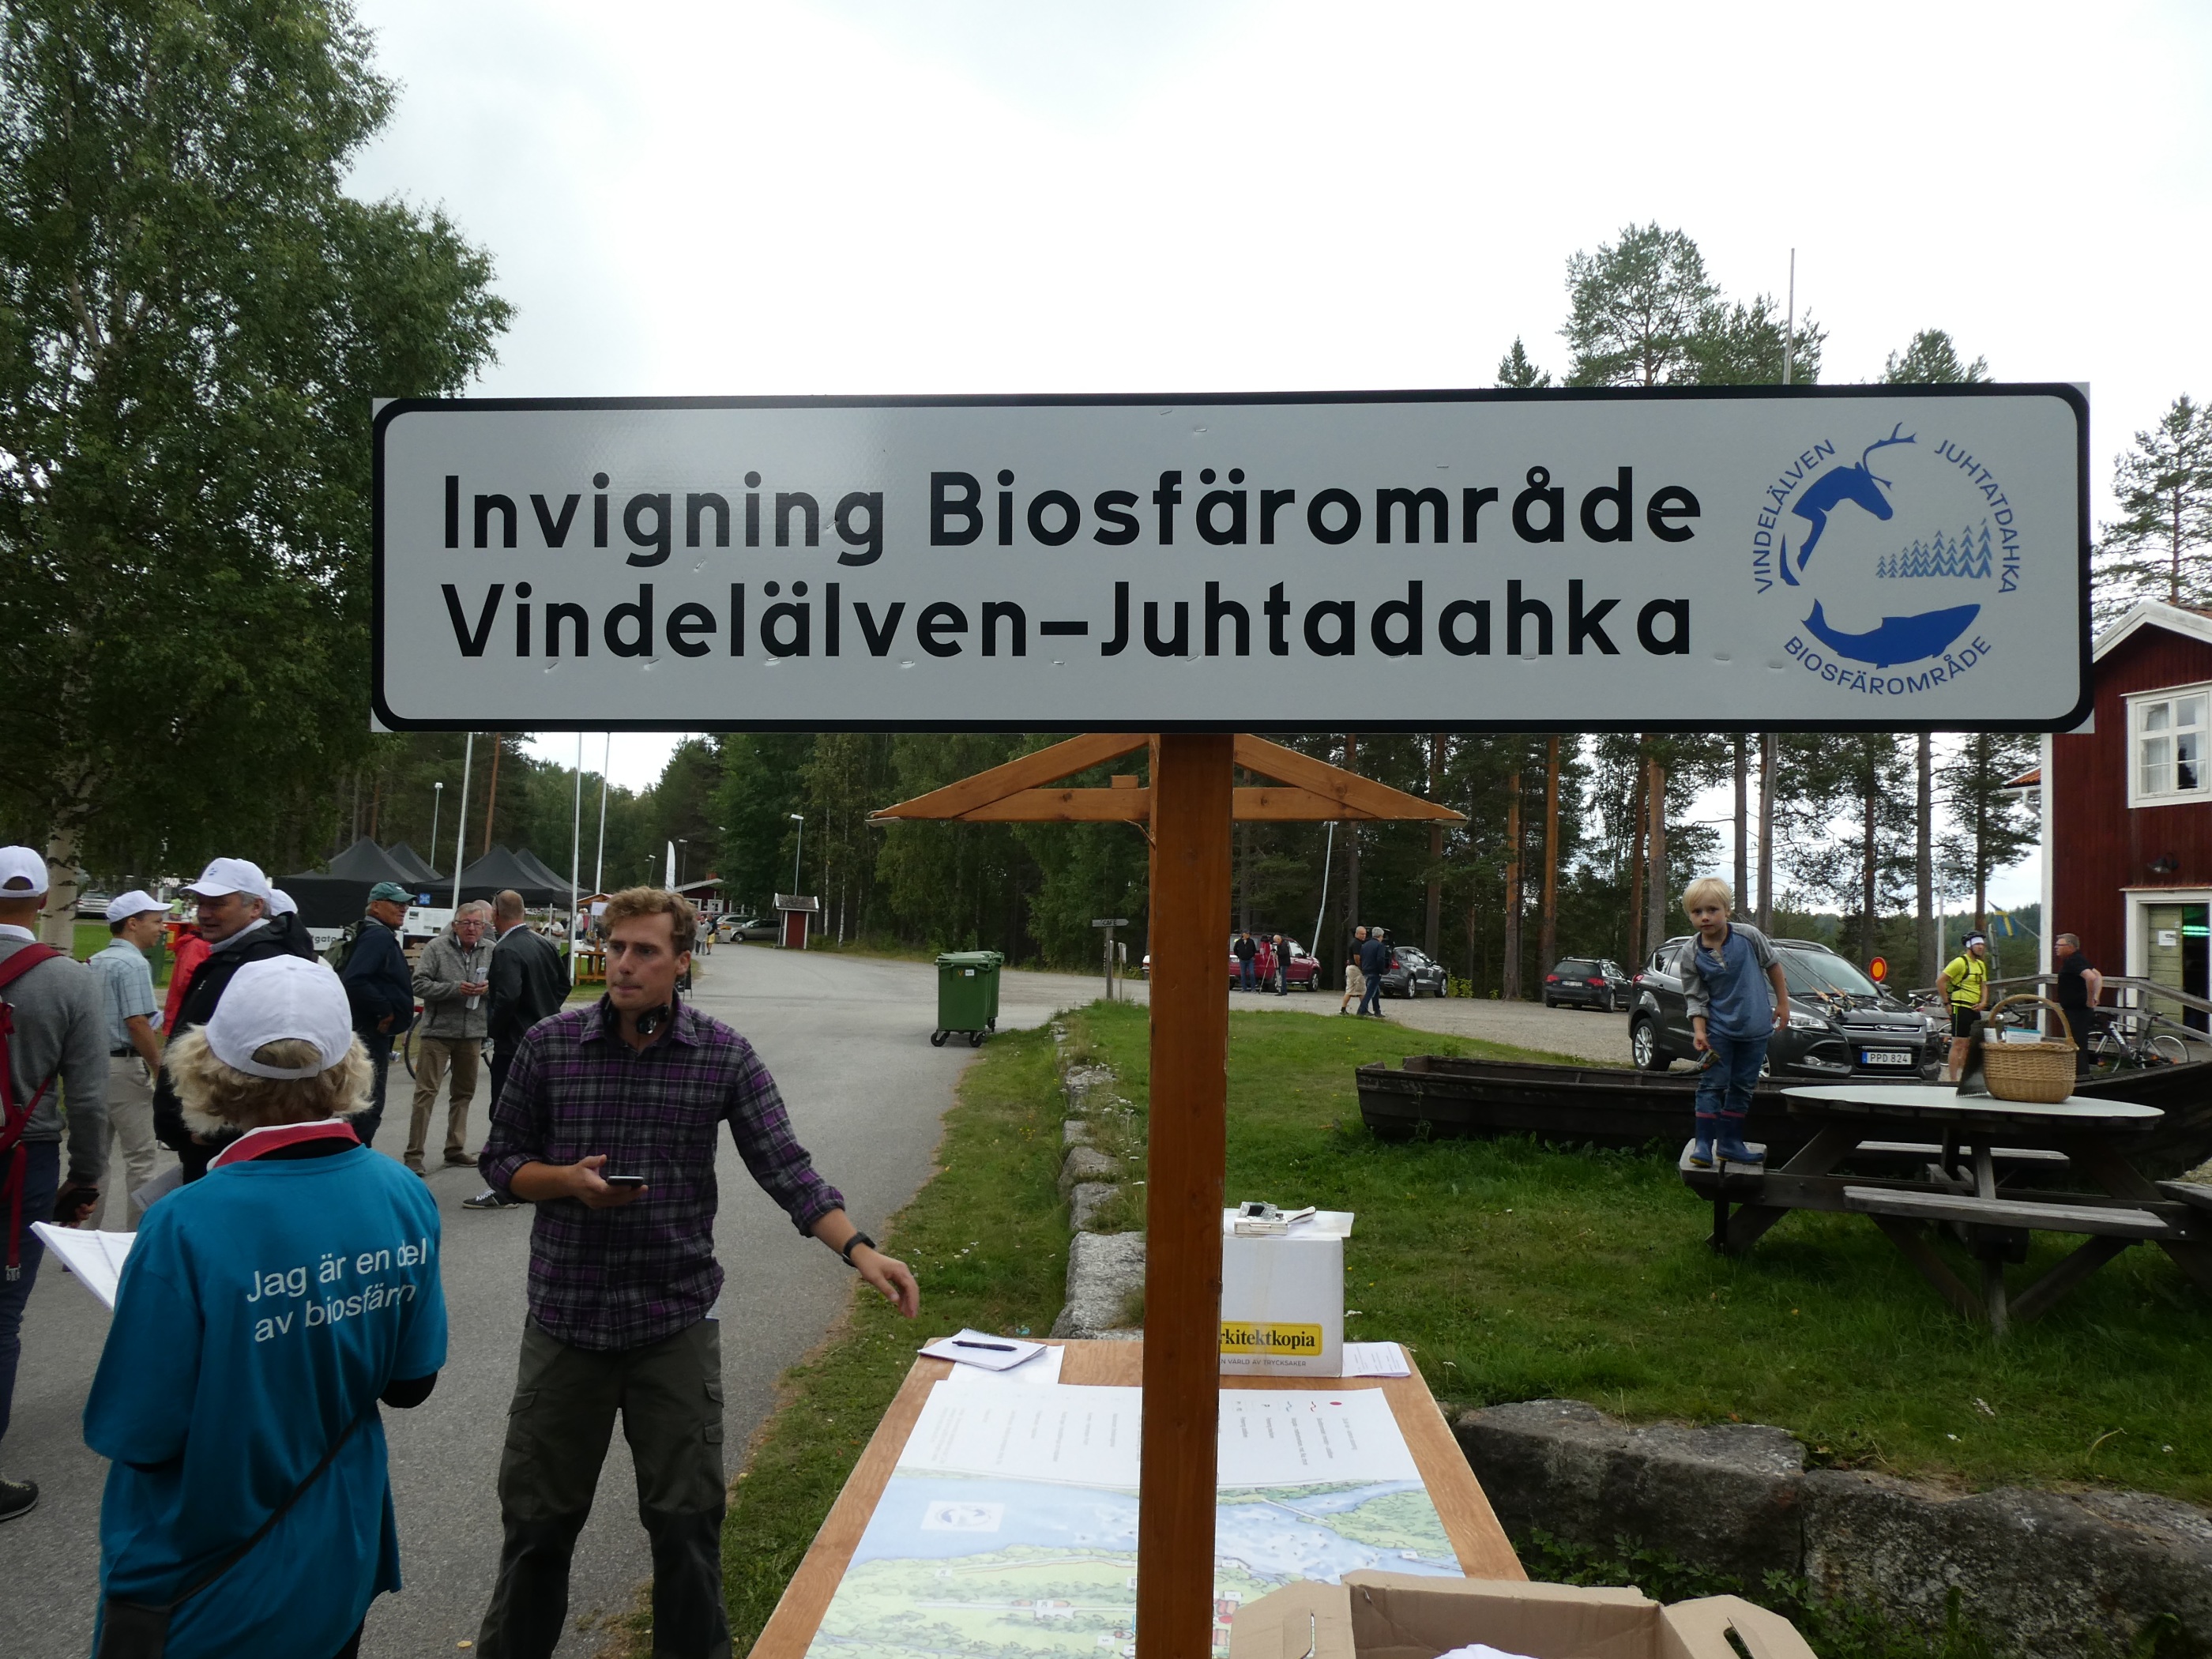 Invigning av Biosfärsområde Vindelälven - Juhtadahka. Fotograf: J. Wallsten.